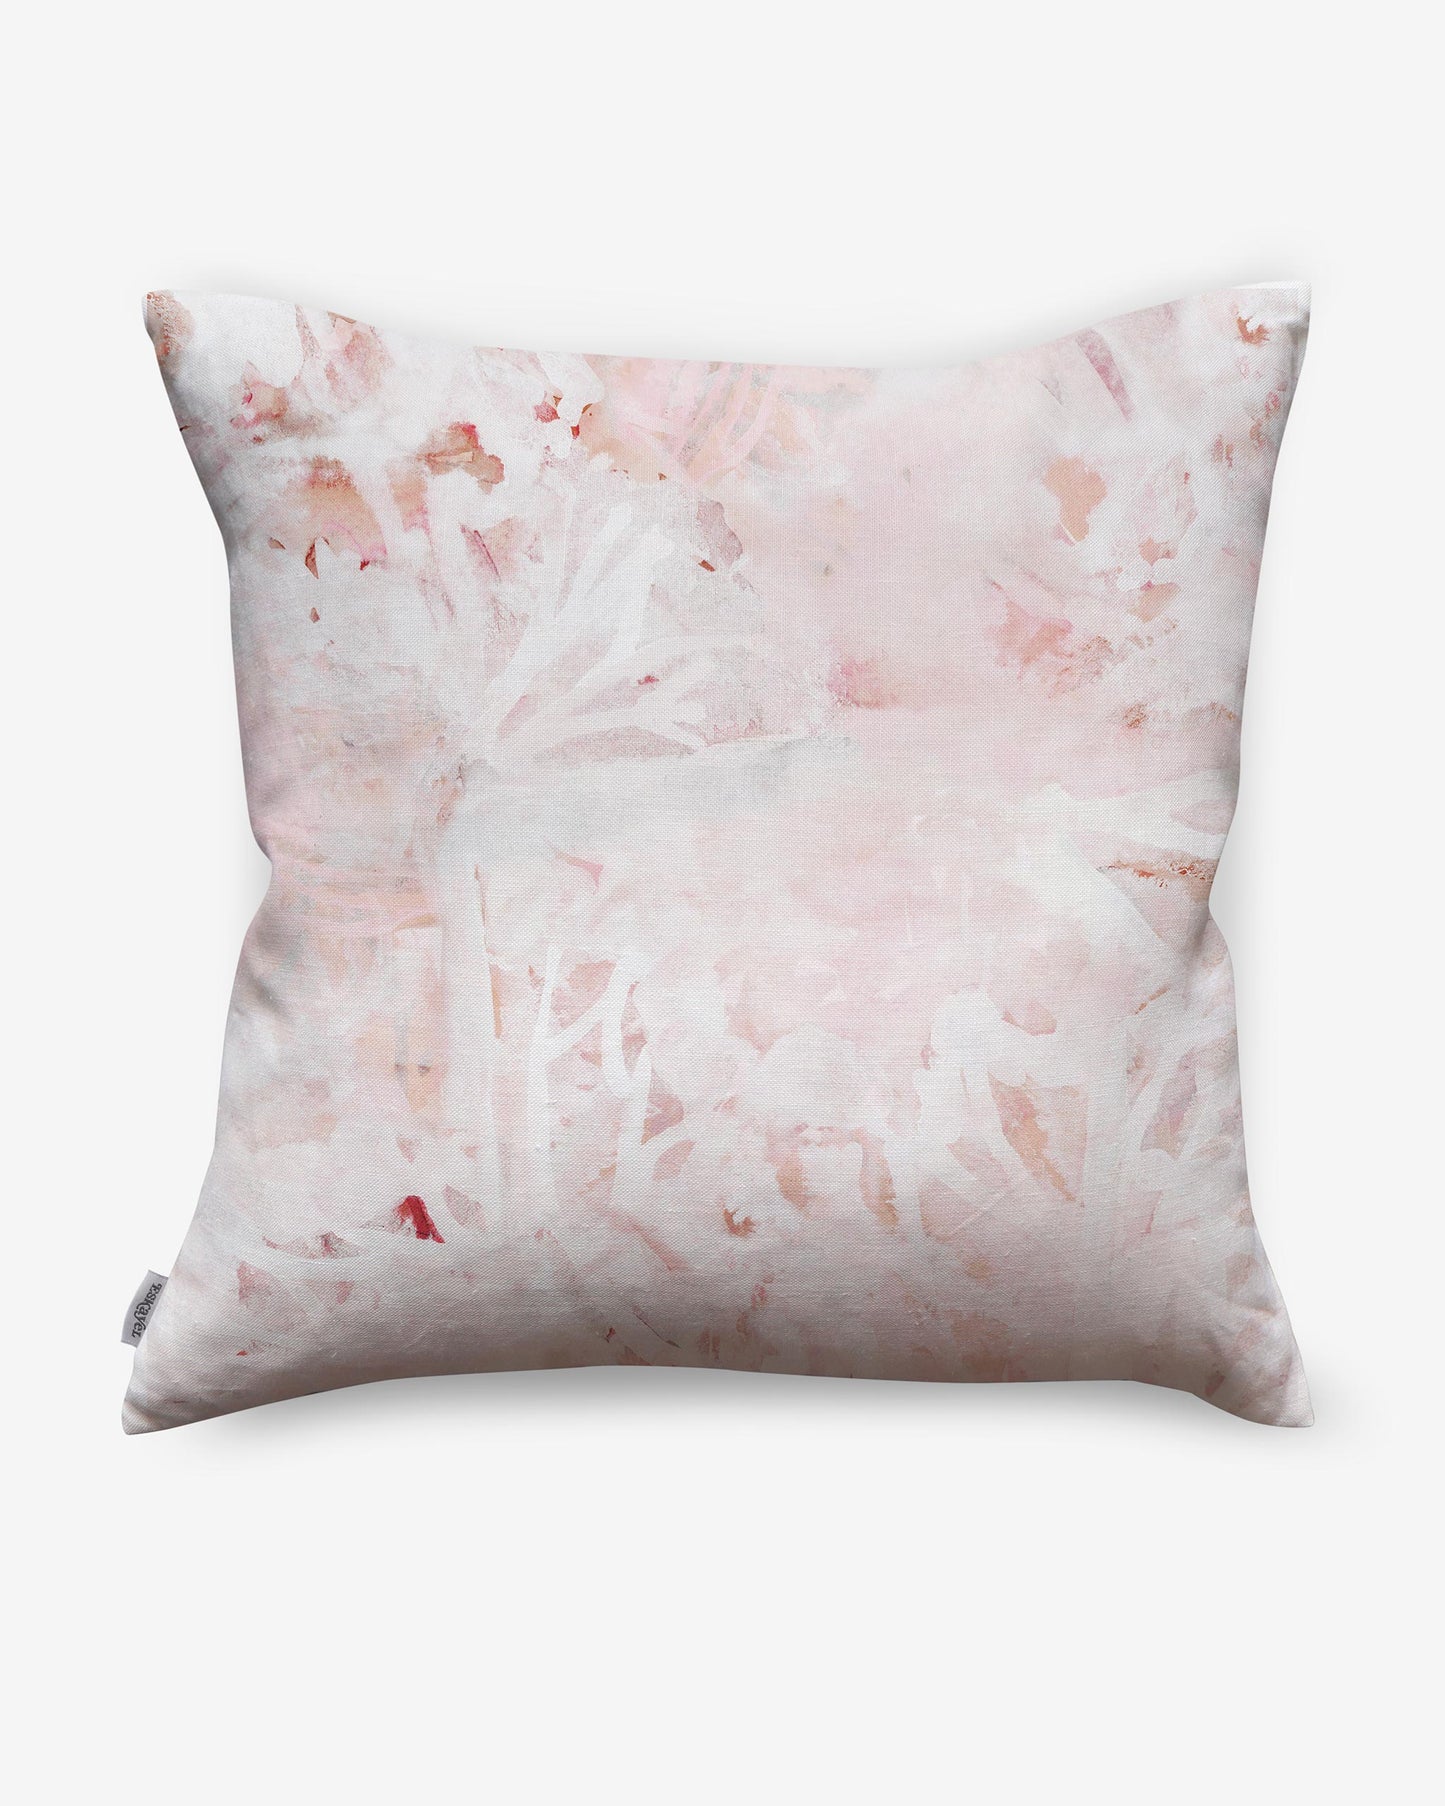 Cortile Pillow||Pelle